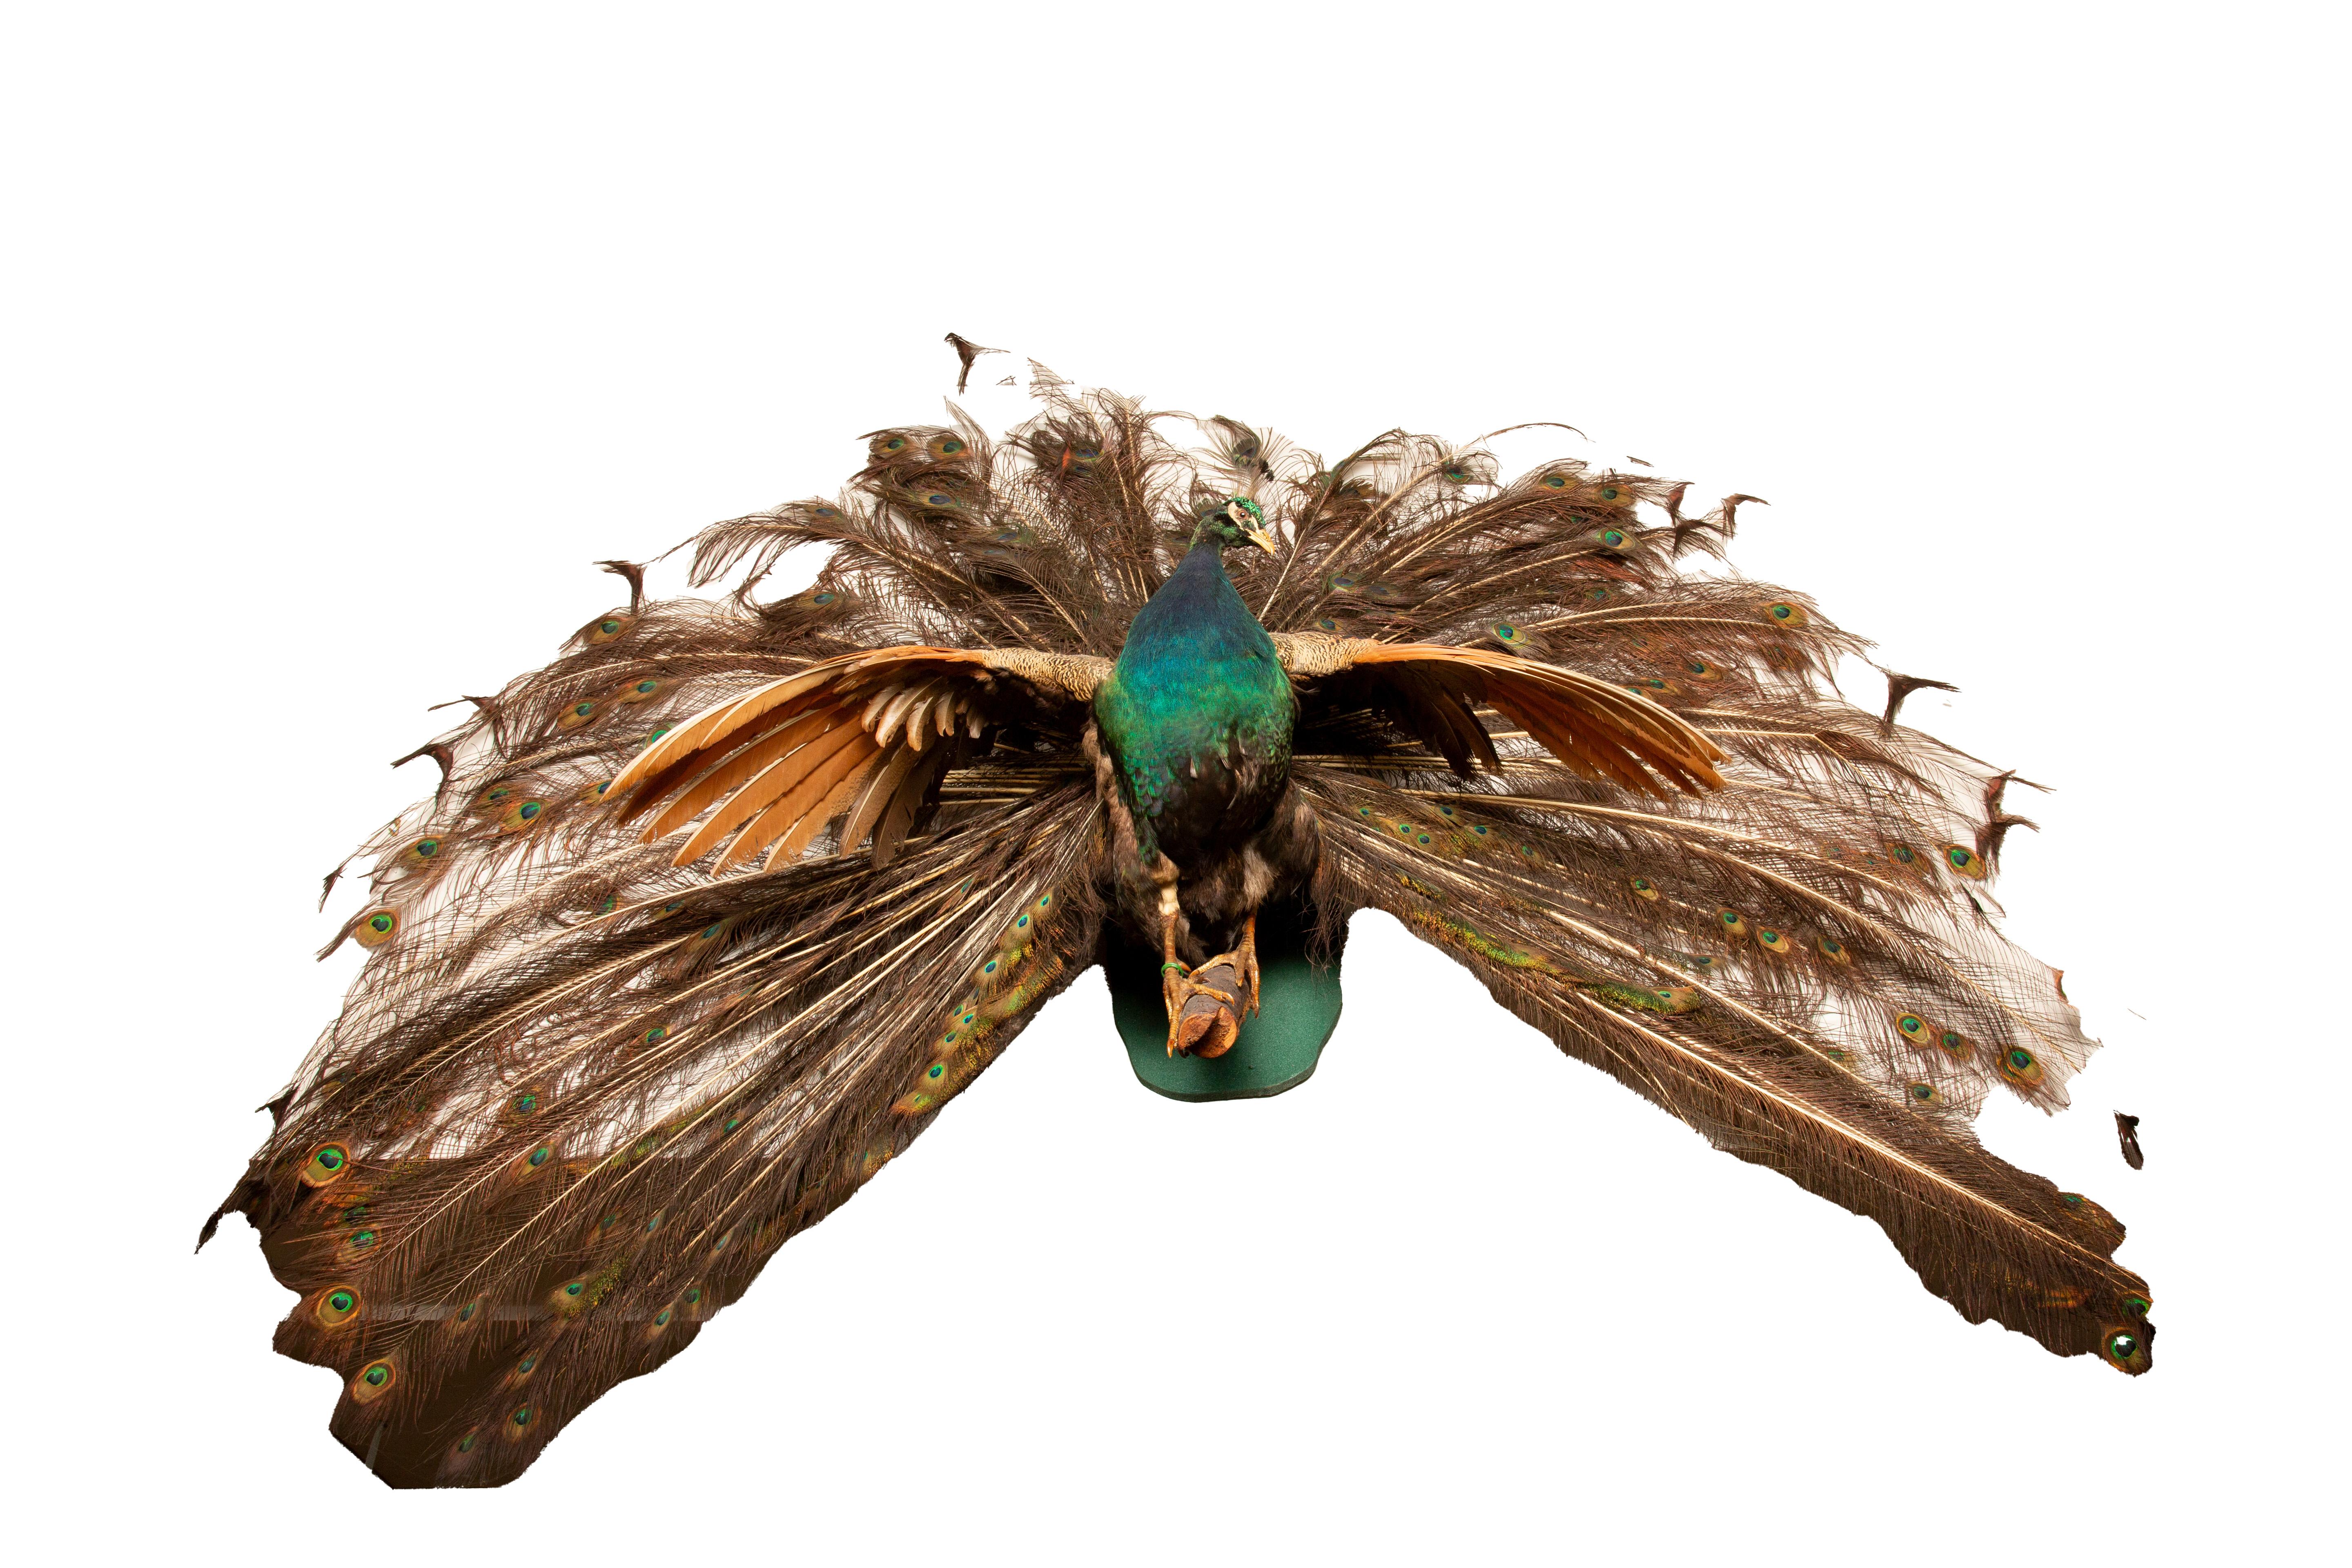 Taxidermie de paon bleu indien, présentant ce magnifique oiseau dans toute sa gloire, avec ses plumes resplendissantes disposées en éventail pour captiver les spectateurs. Élevez votre décor avec ce chef-d'œuvre impressionnant, semblable à la